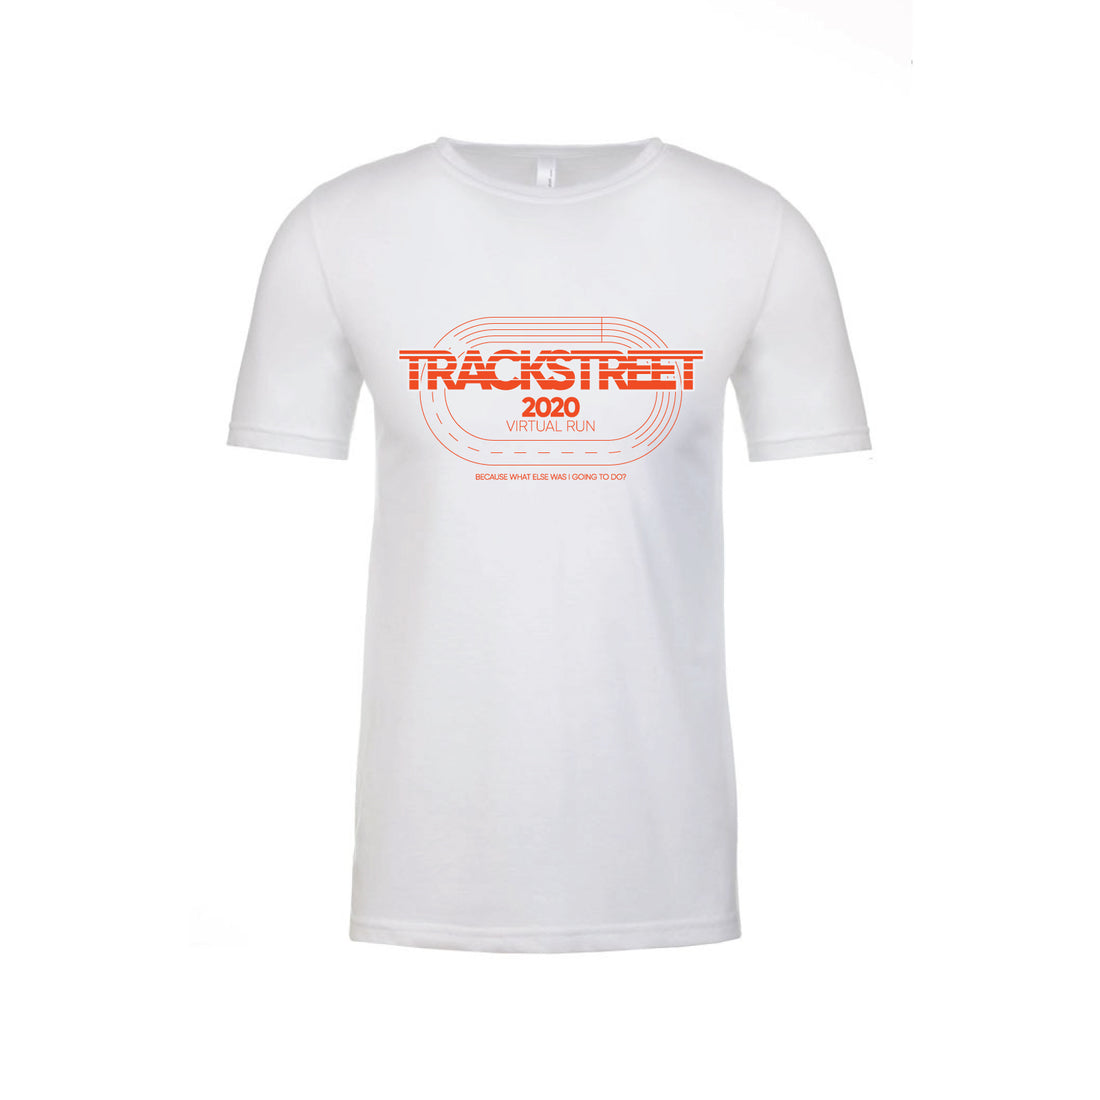 Trackstreet 2020 Virtual Run